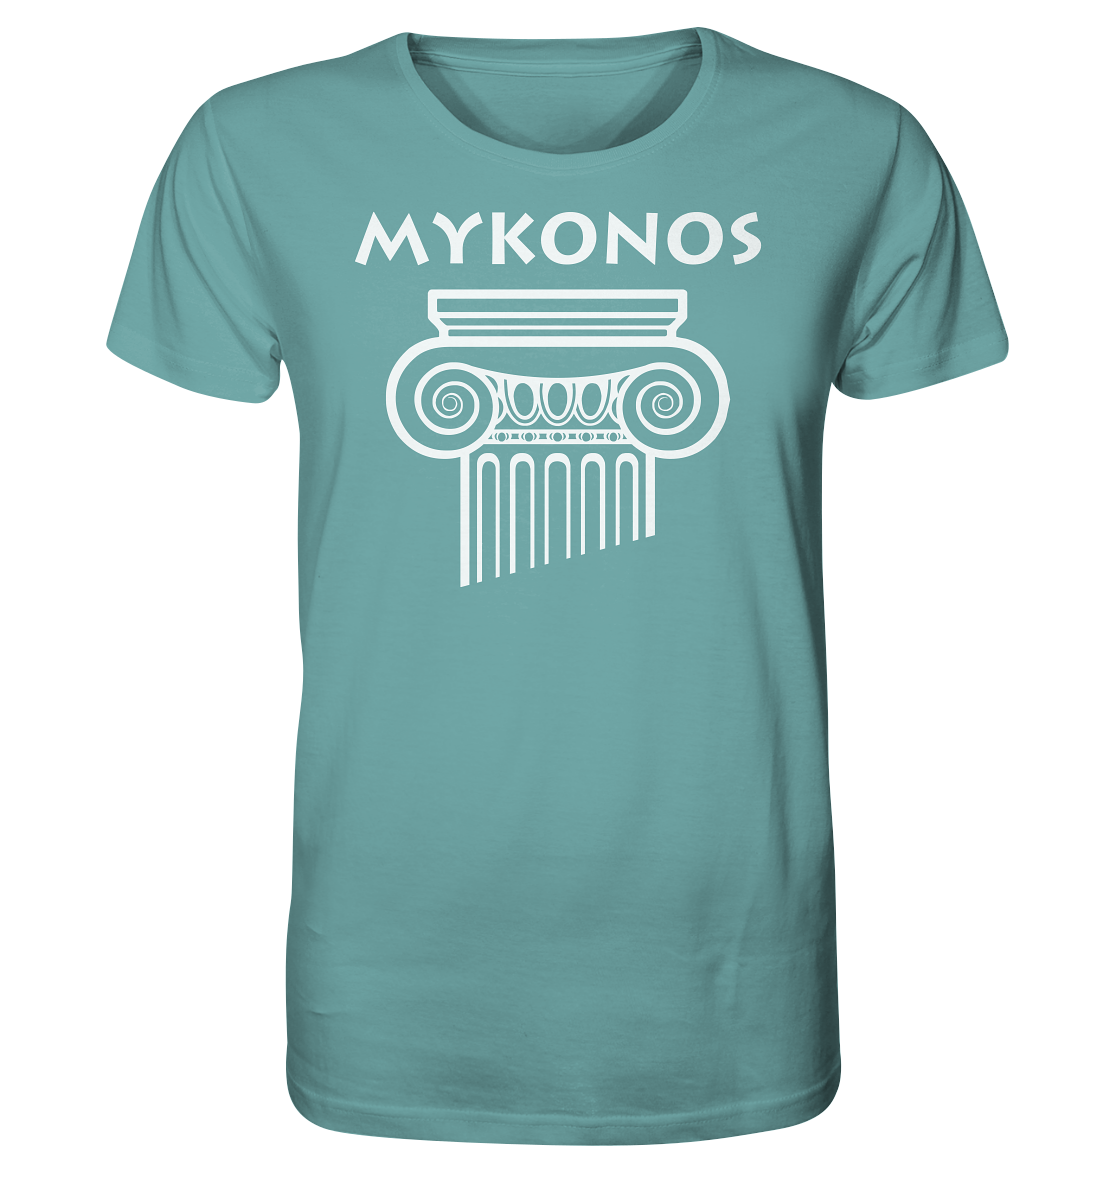 Mykonos Griechischer Säulenkopf - Organic Shirt